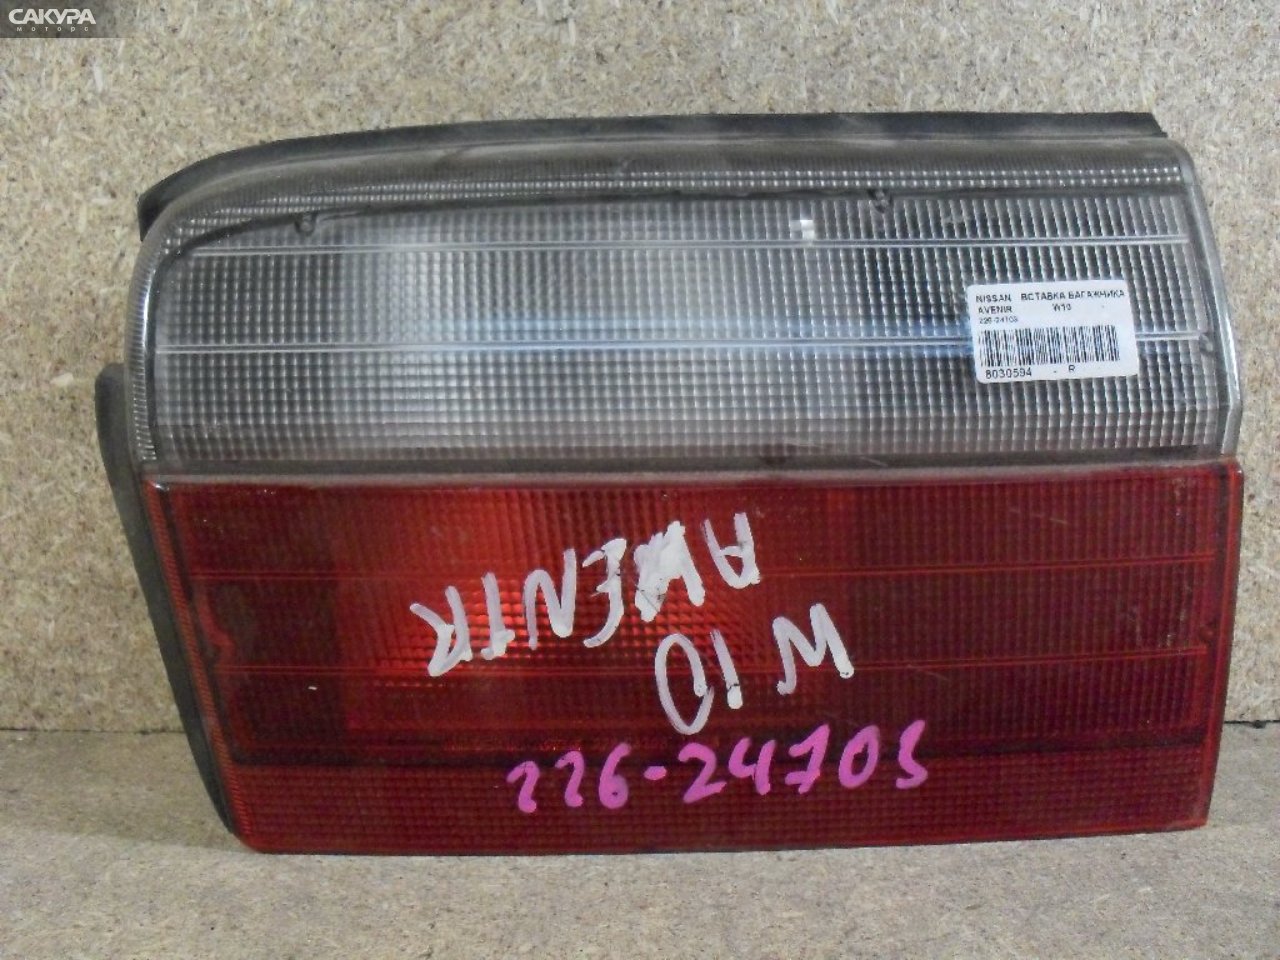 Фонарь вставка багажника правый Nissan Avenir W10 226-24703: купить в Сакура Абакан.